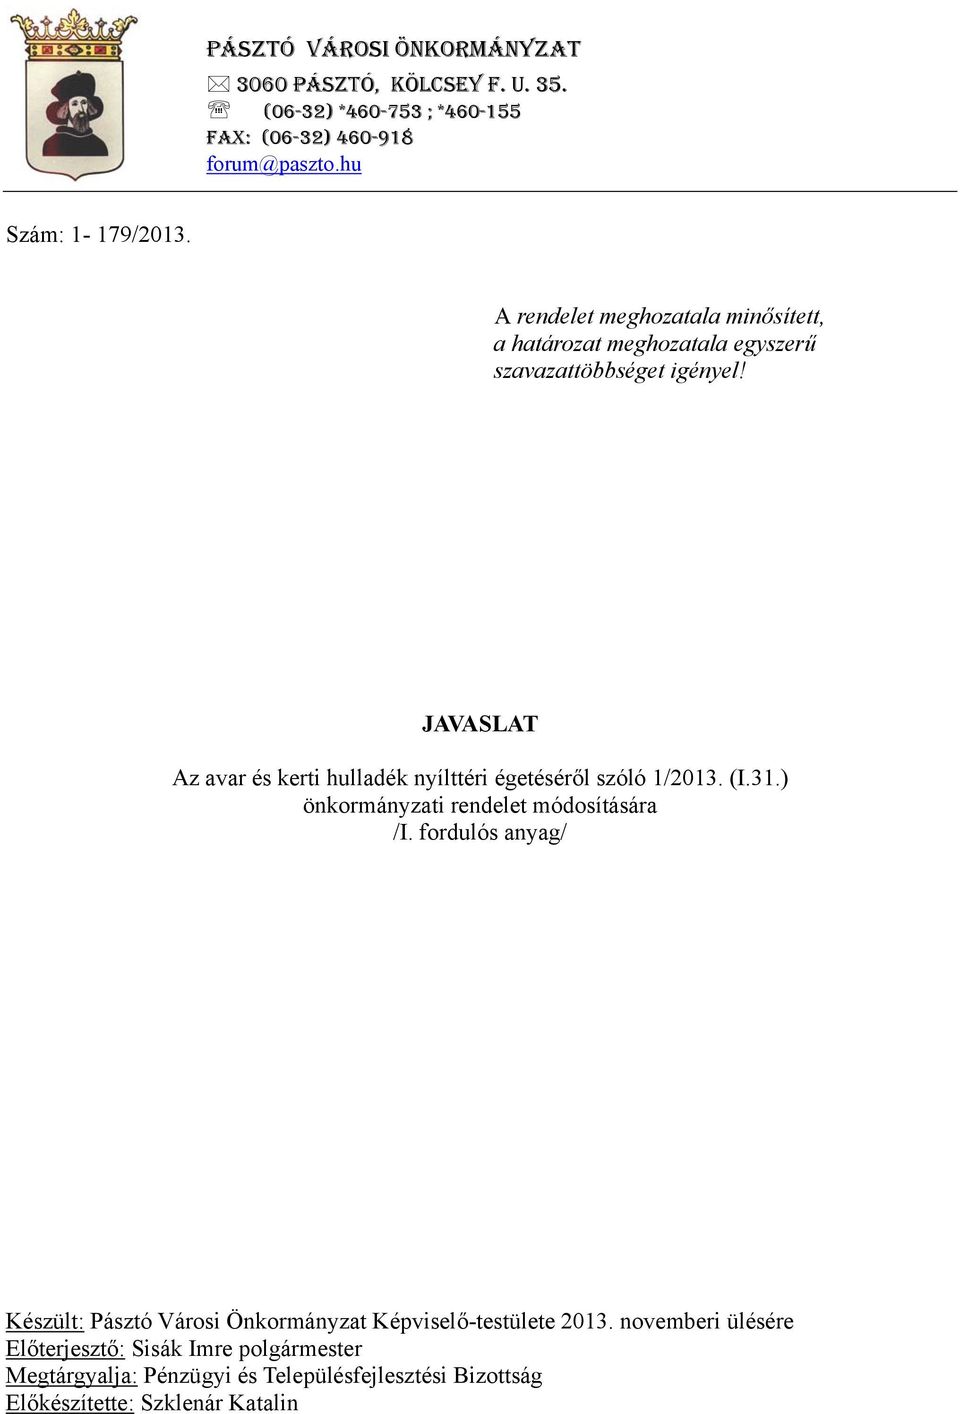 JAVASLAT Az avar és kerti hulladék nyílttéri égetéséről szóló 1/2013. (I.31.) önkormányzati rendelet módosítására /I.